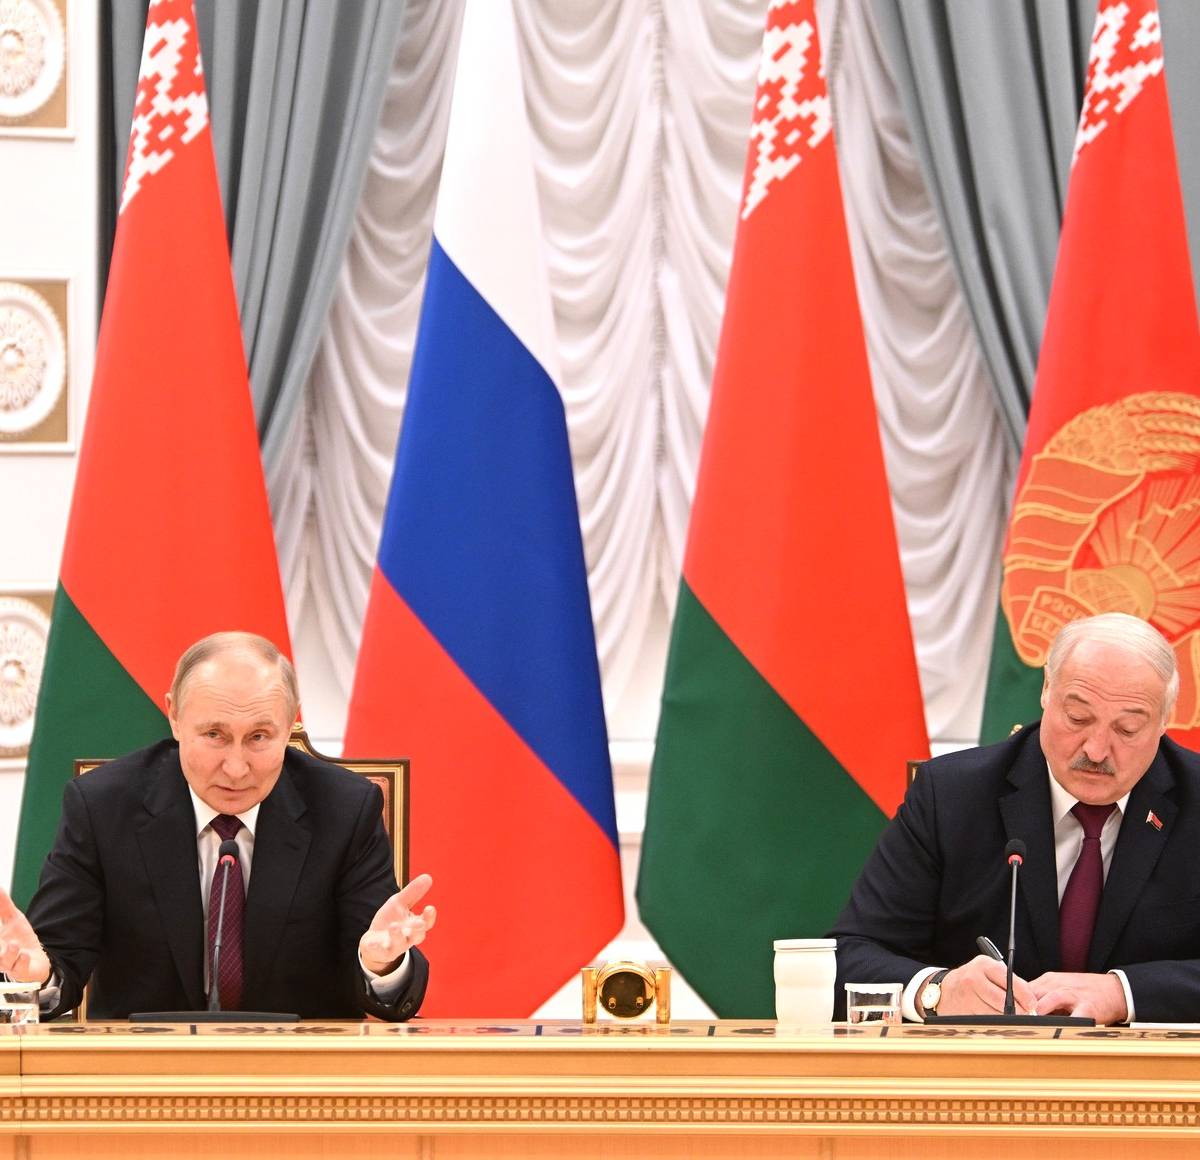 Белоруссия: Лукашенко об интеграции, МИД после Макея